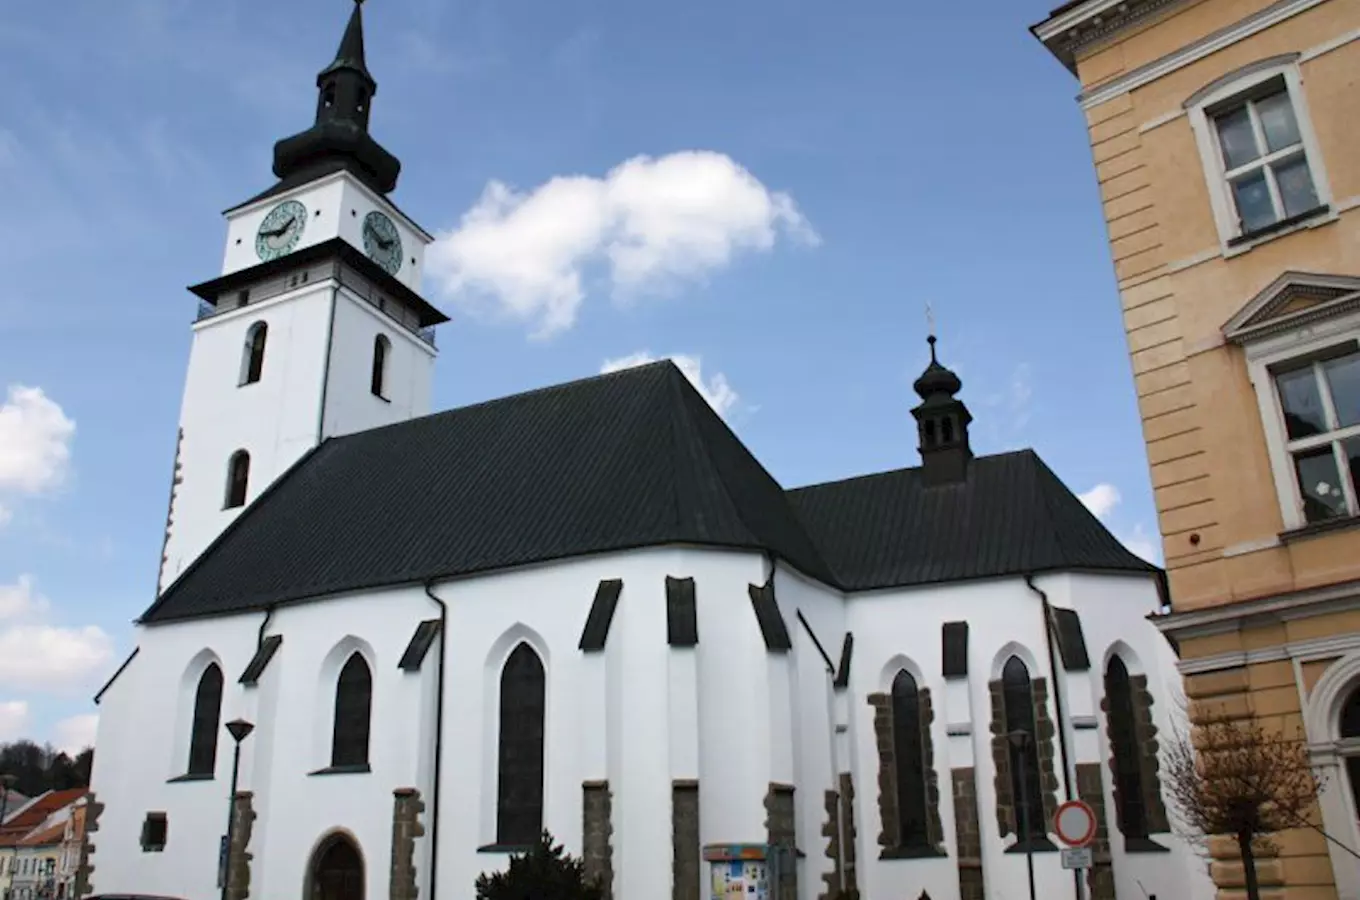 Chrám sv. Mikuláše Velké Meziříčí s největšími osvětlenými hodinami v ČR